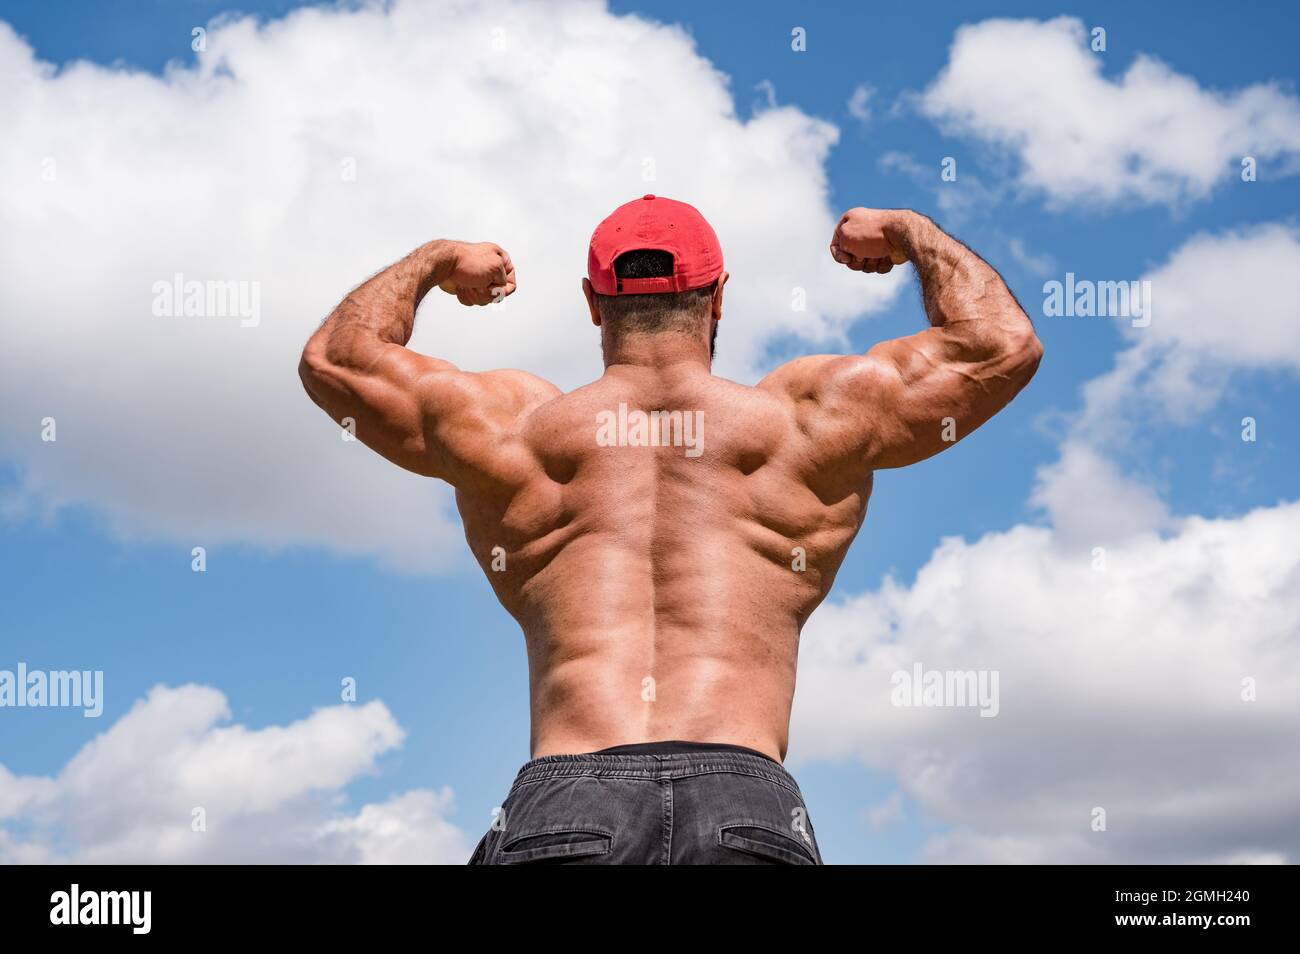 forte giovane atleta fitness bodybuilder maschio in berretto rosso mostrando il suo potente sviluppo muscolare schiena su sfondo cielo blu nuvoloso Foto Stock